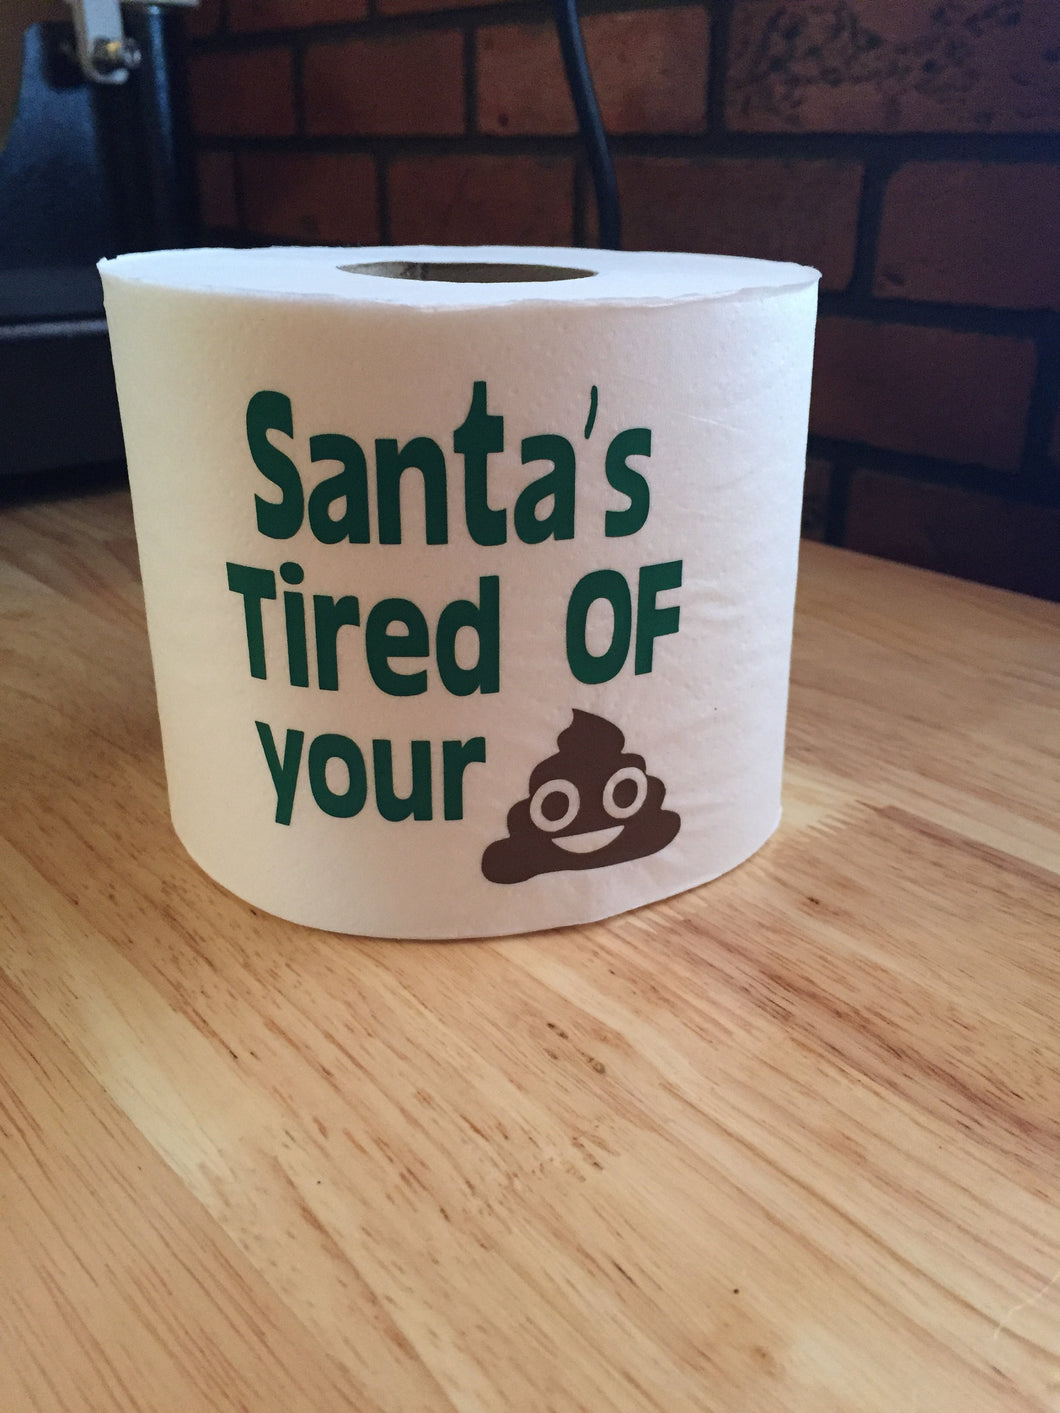 Christmas Gift From Santa, Funny Christmas Gift From Santa, Gift From Santa Funny Christmas, You're on Santas List, Santas Tired